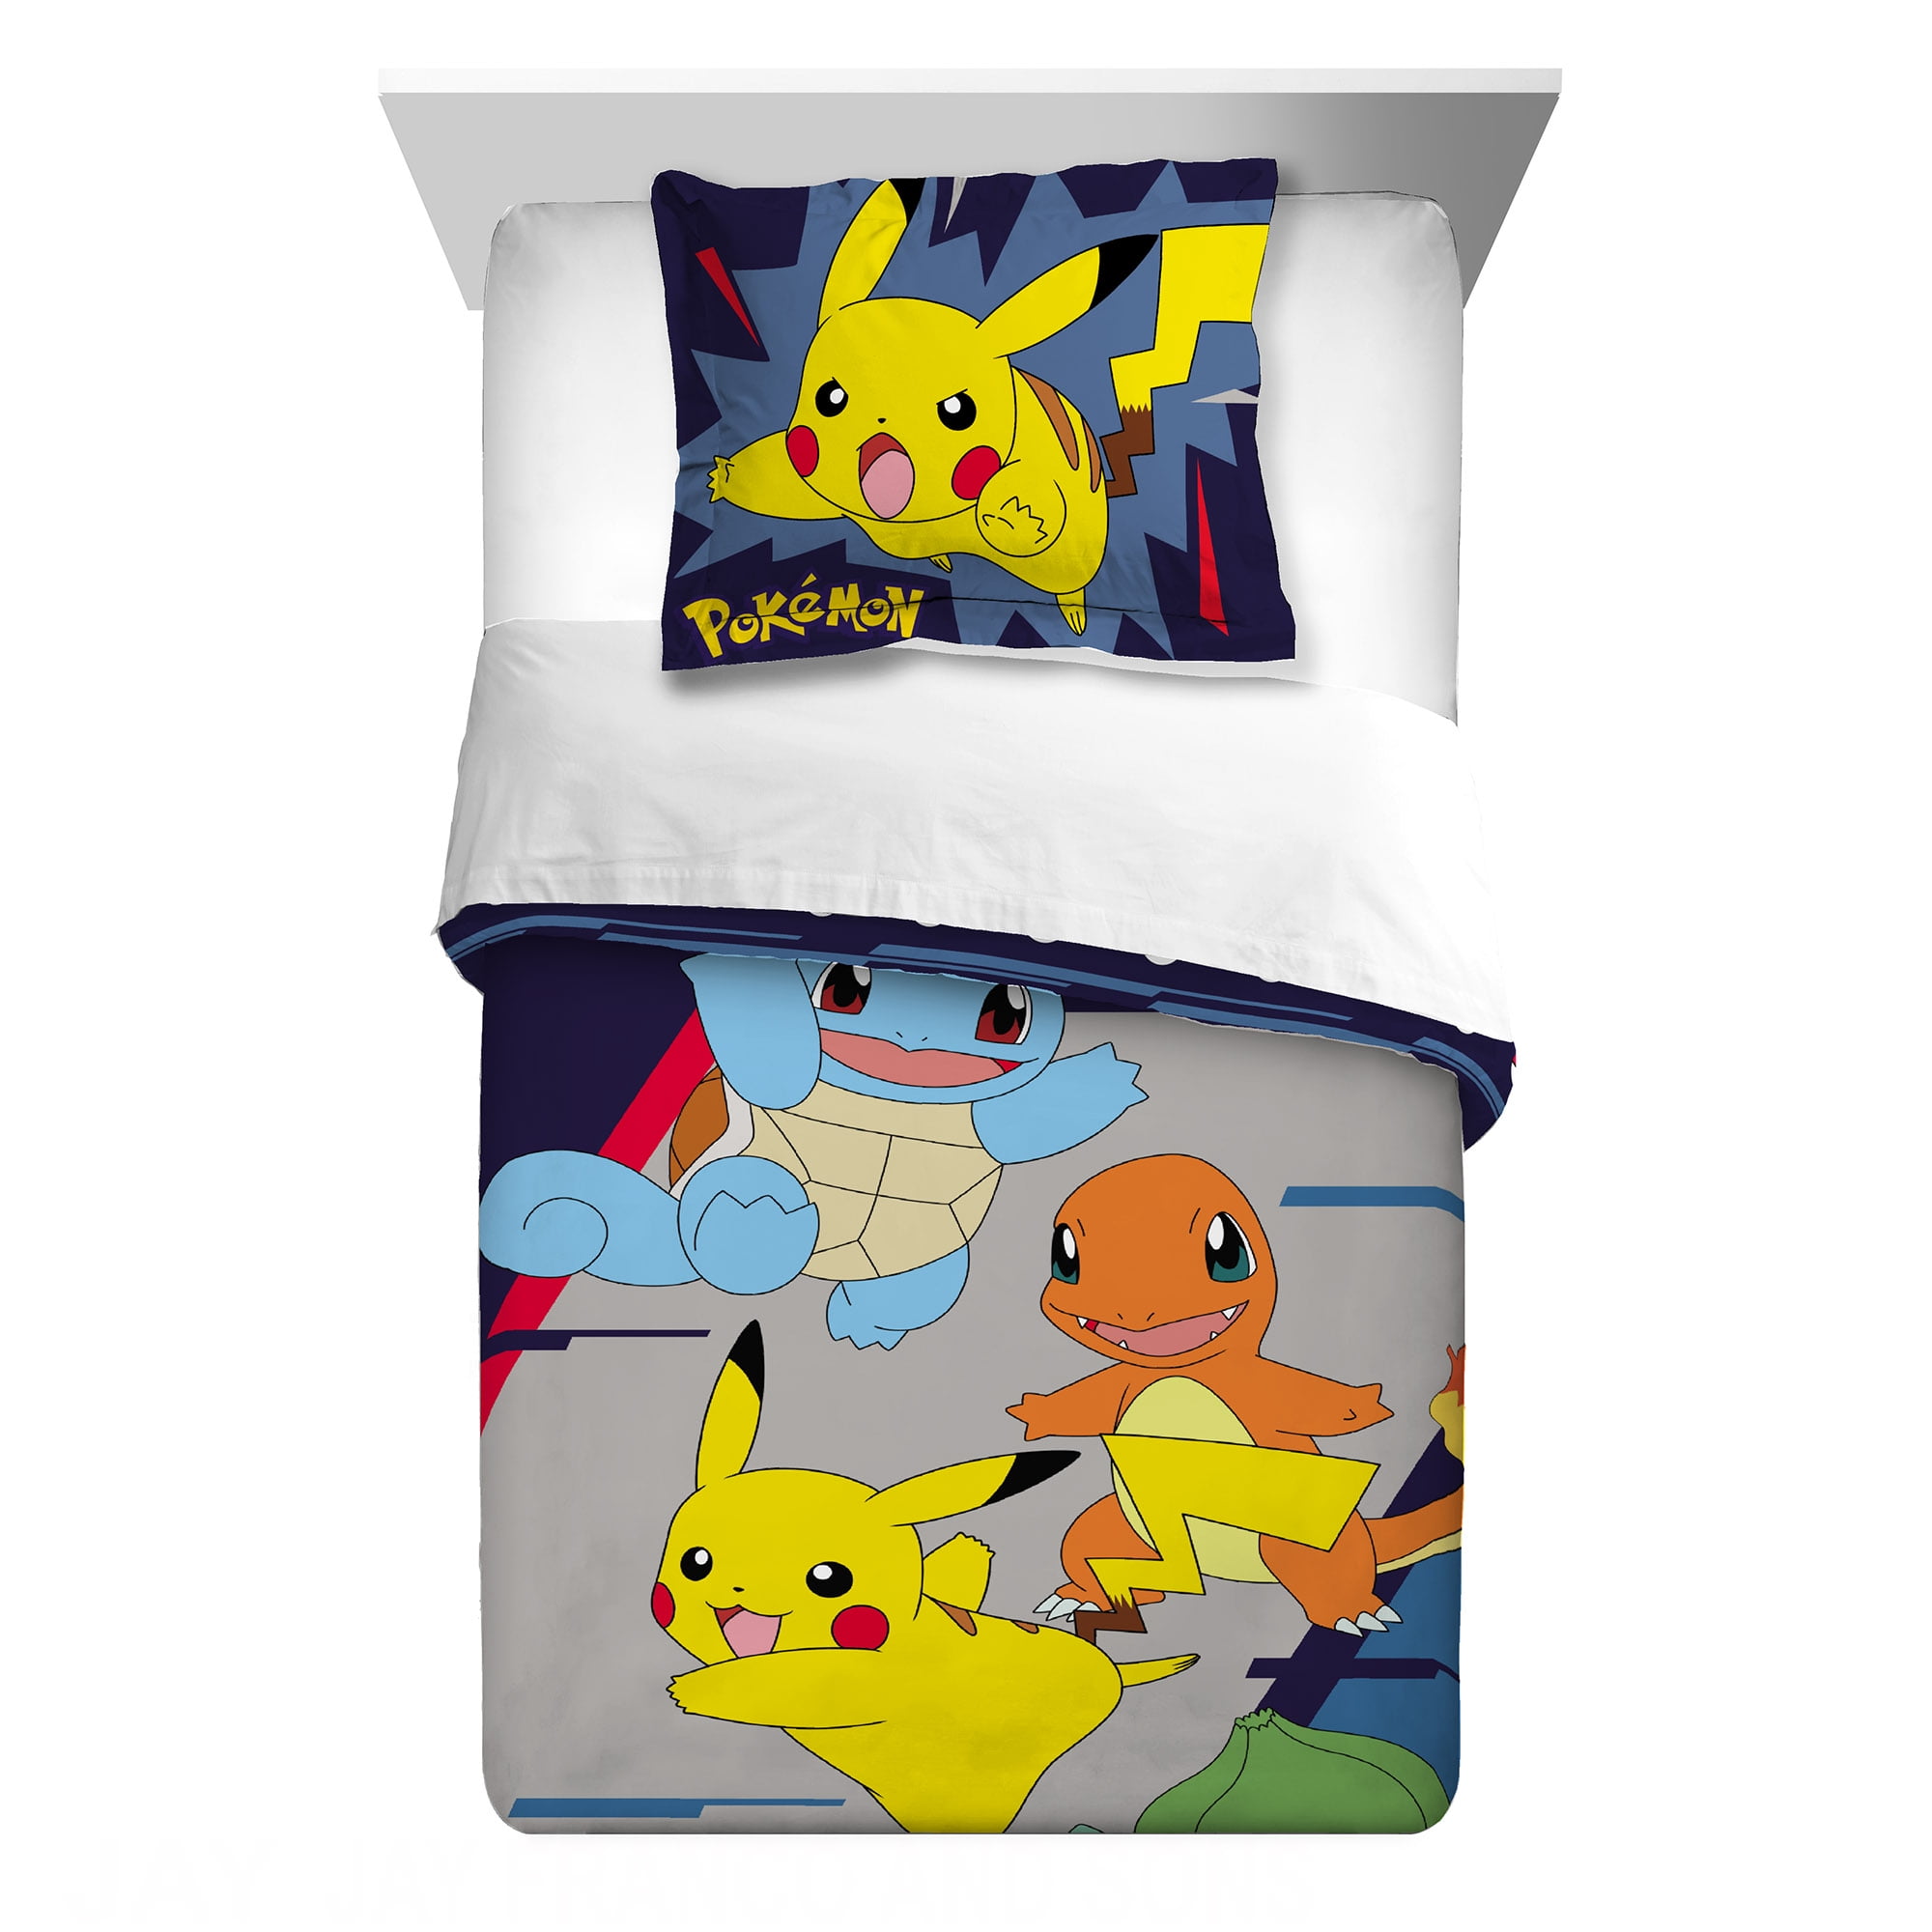 Afwijzen Samenhangend flauw Pokemon Kids 2-Piece Twin/Full Comforter Set, Reversible, Microfiber -  Walmart.com